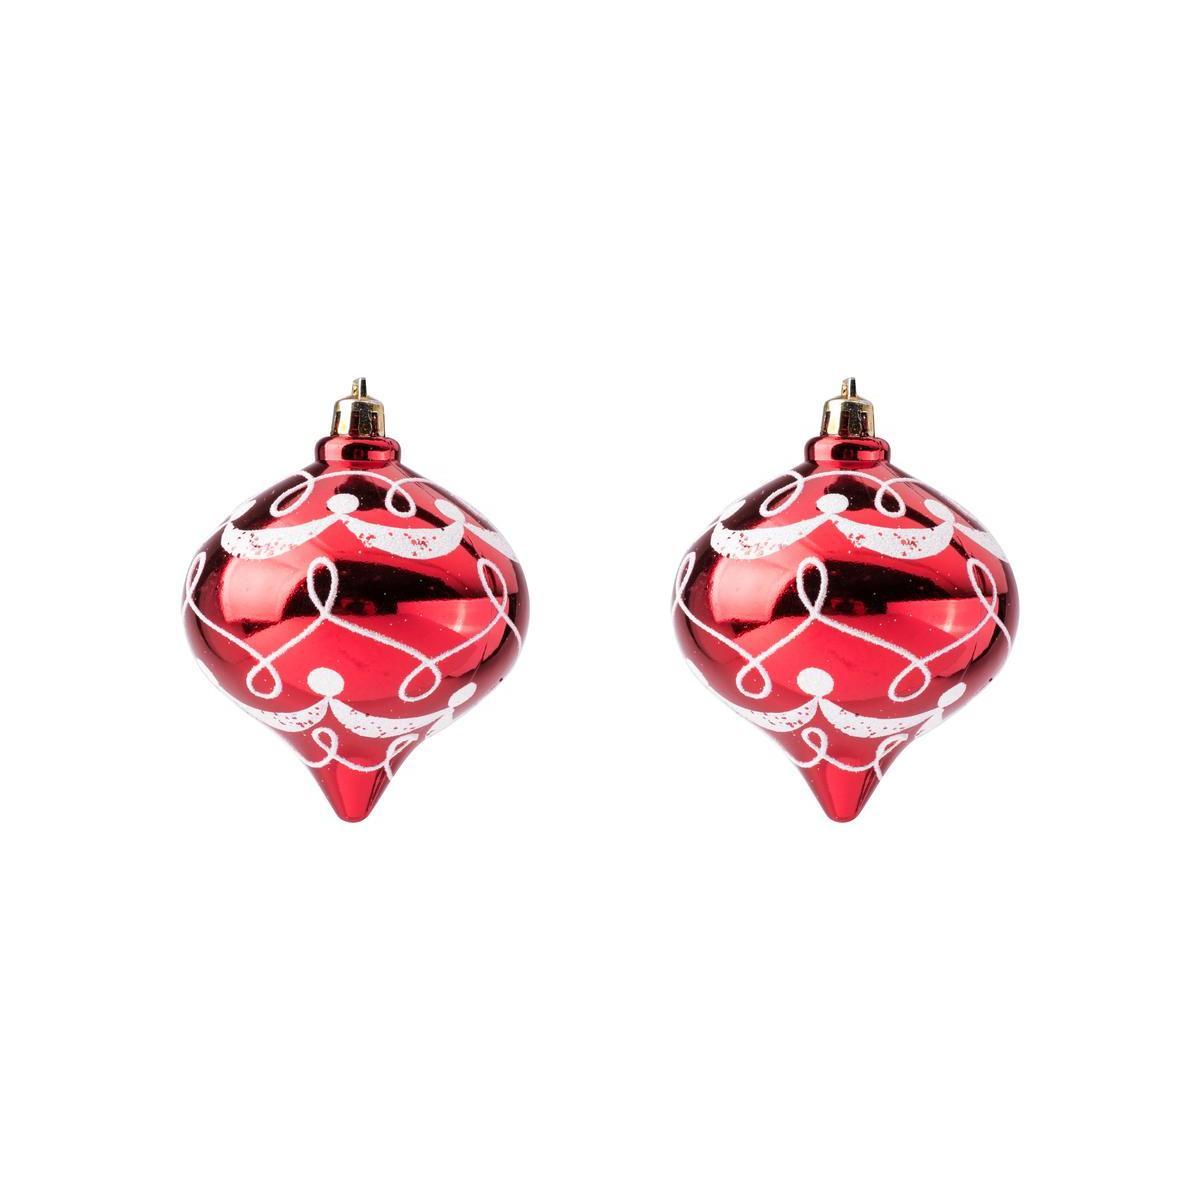 2 boules de Noël - Plastique - H 8 cm - Rouge et blanc